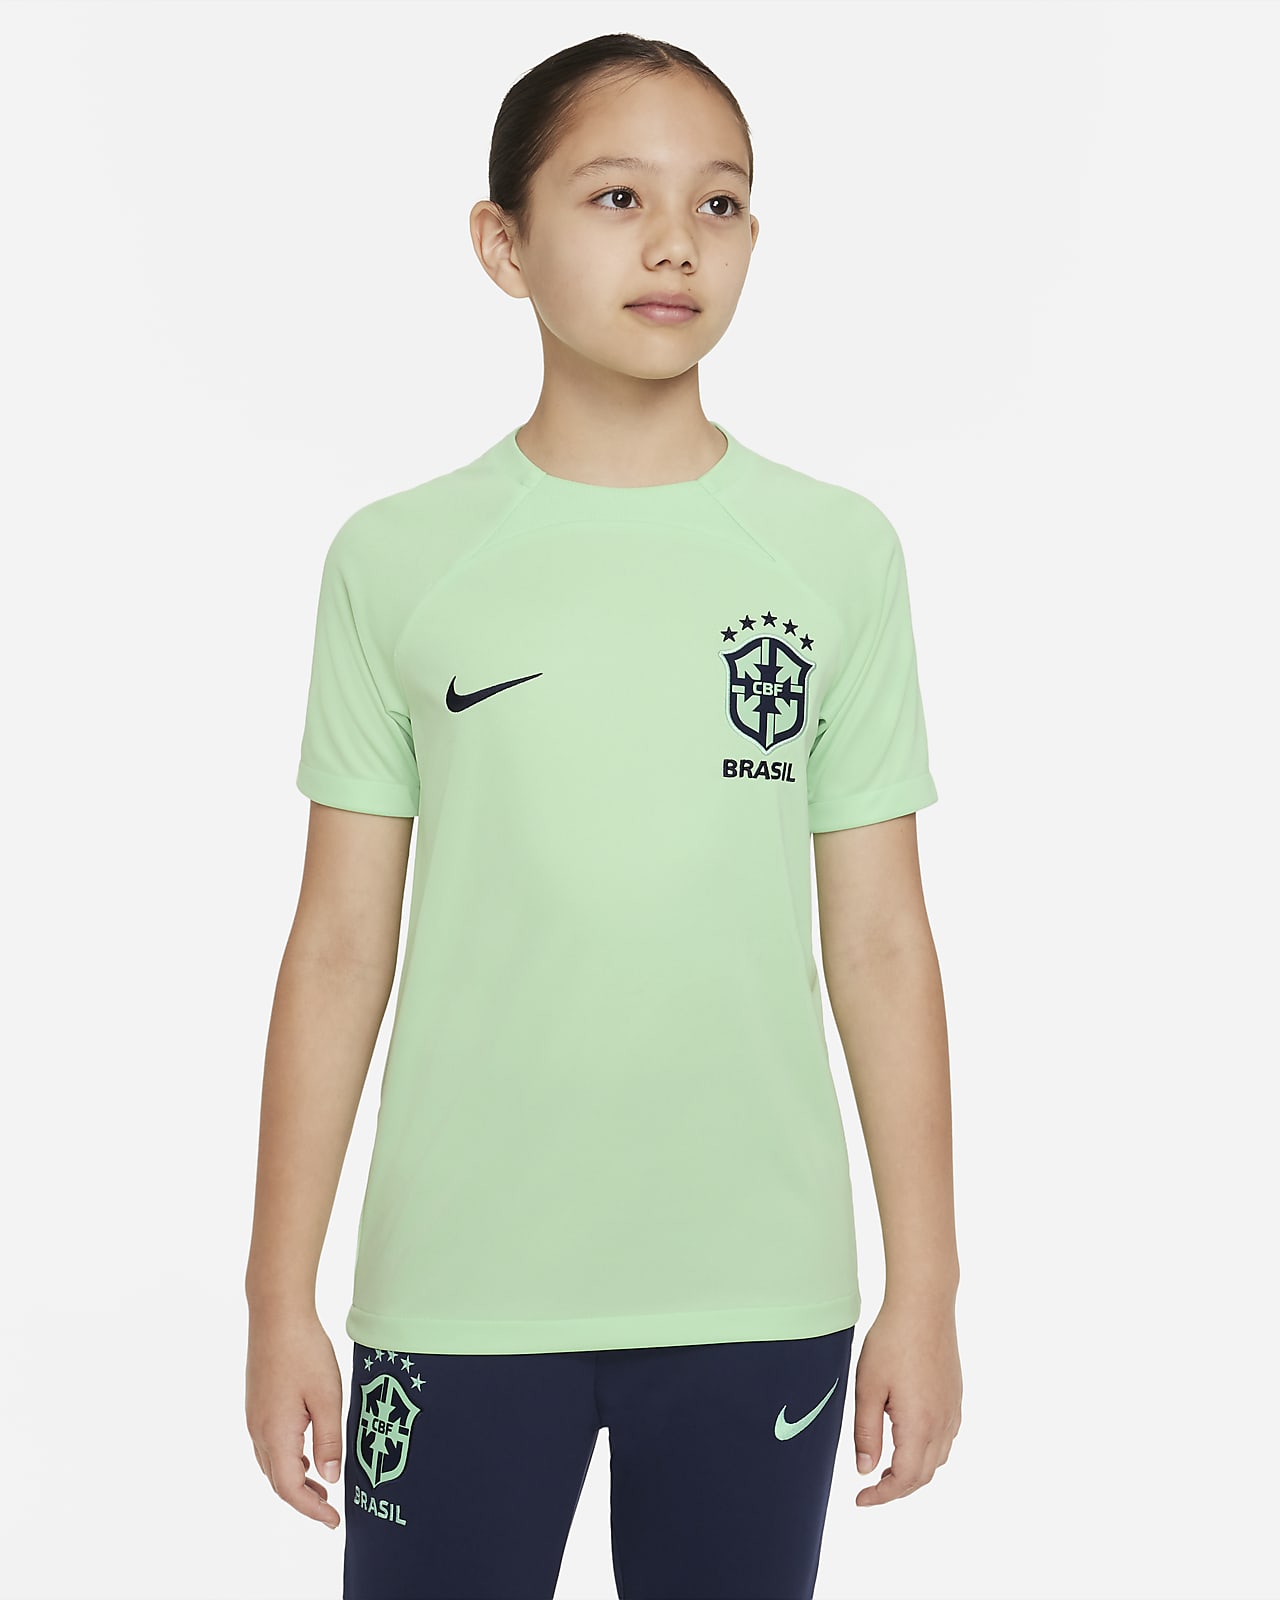 Brazilië Academy Pro Nike Dri-FIT voetbaltop met korte mouwen voor kids